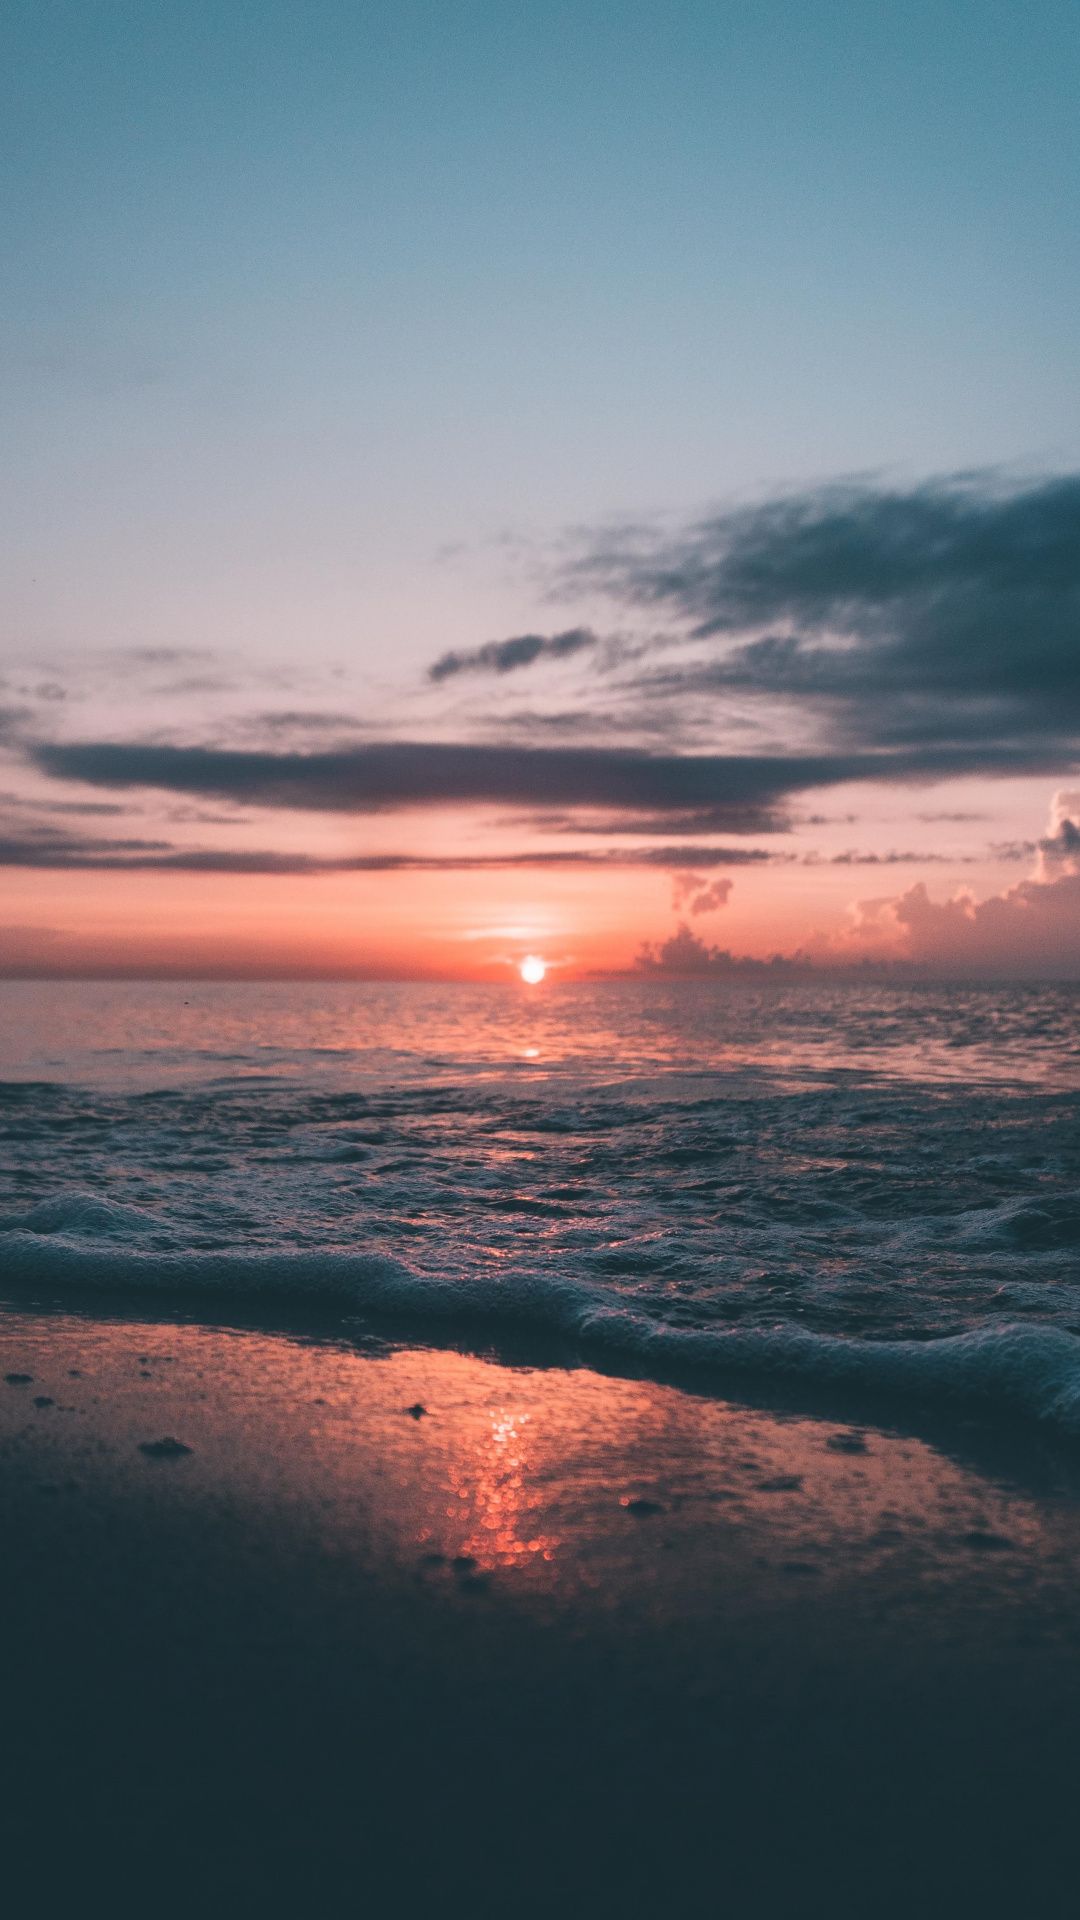 IPhone wallpaper of a sunset over the ocean - Sunset, beach